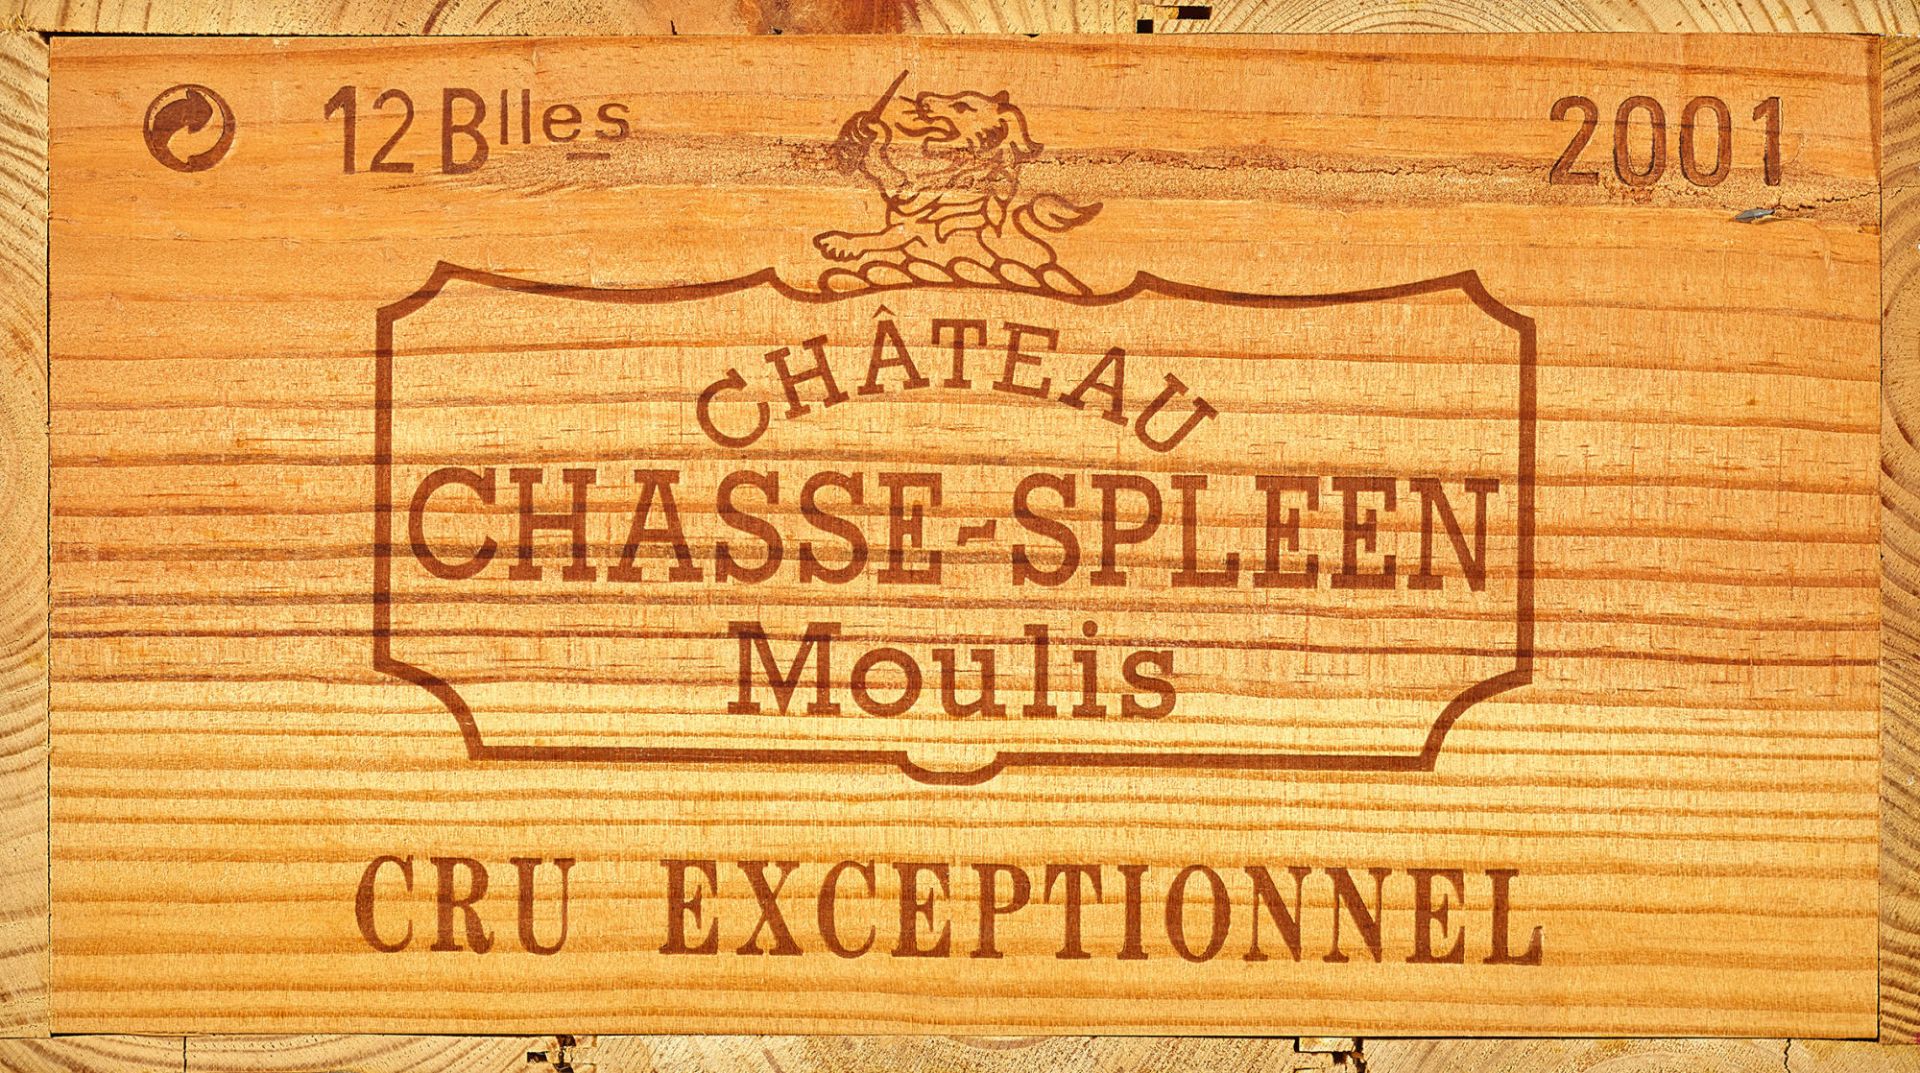 CHÂTEAU CHASSE-SPLEEN: Moulis-en-Médoc, Cru Bourgeois Exceptionnel, 2001.